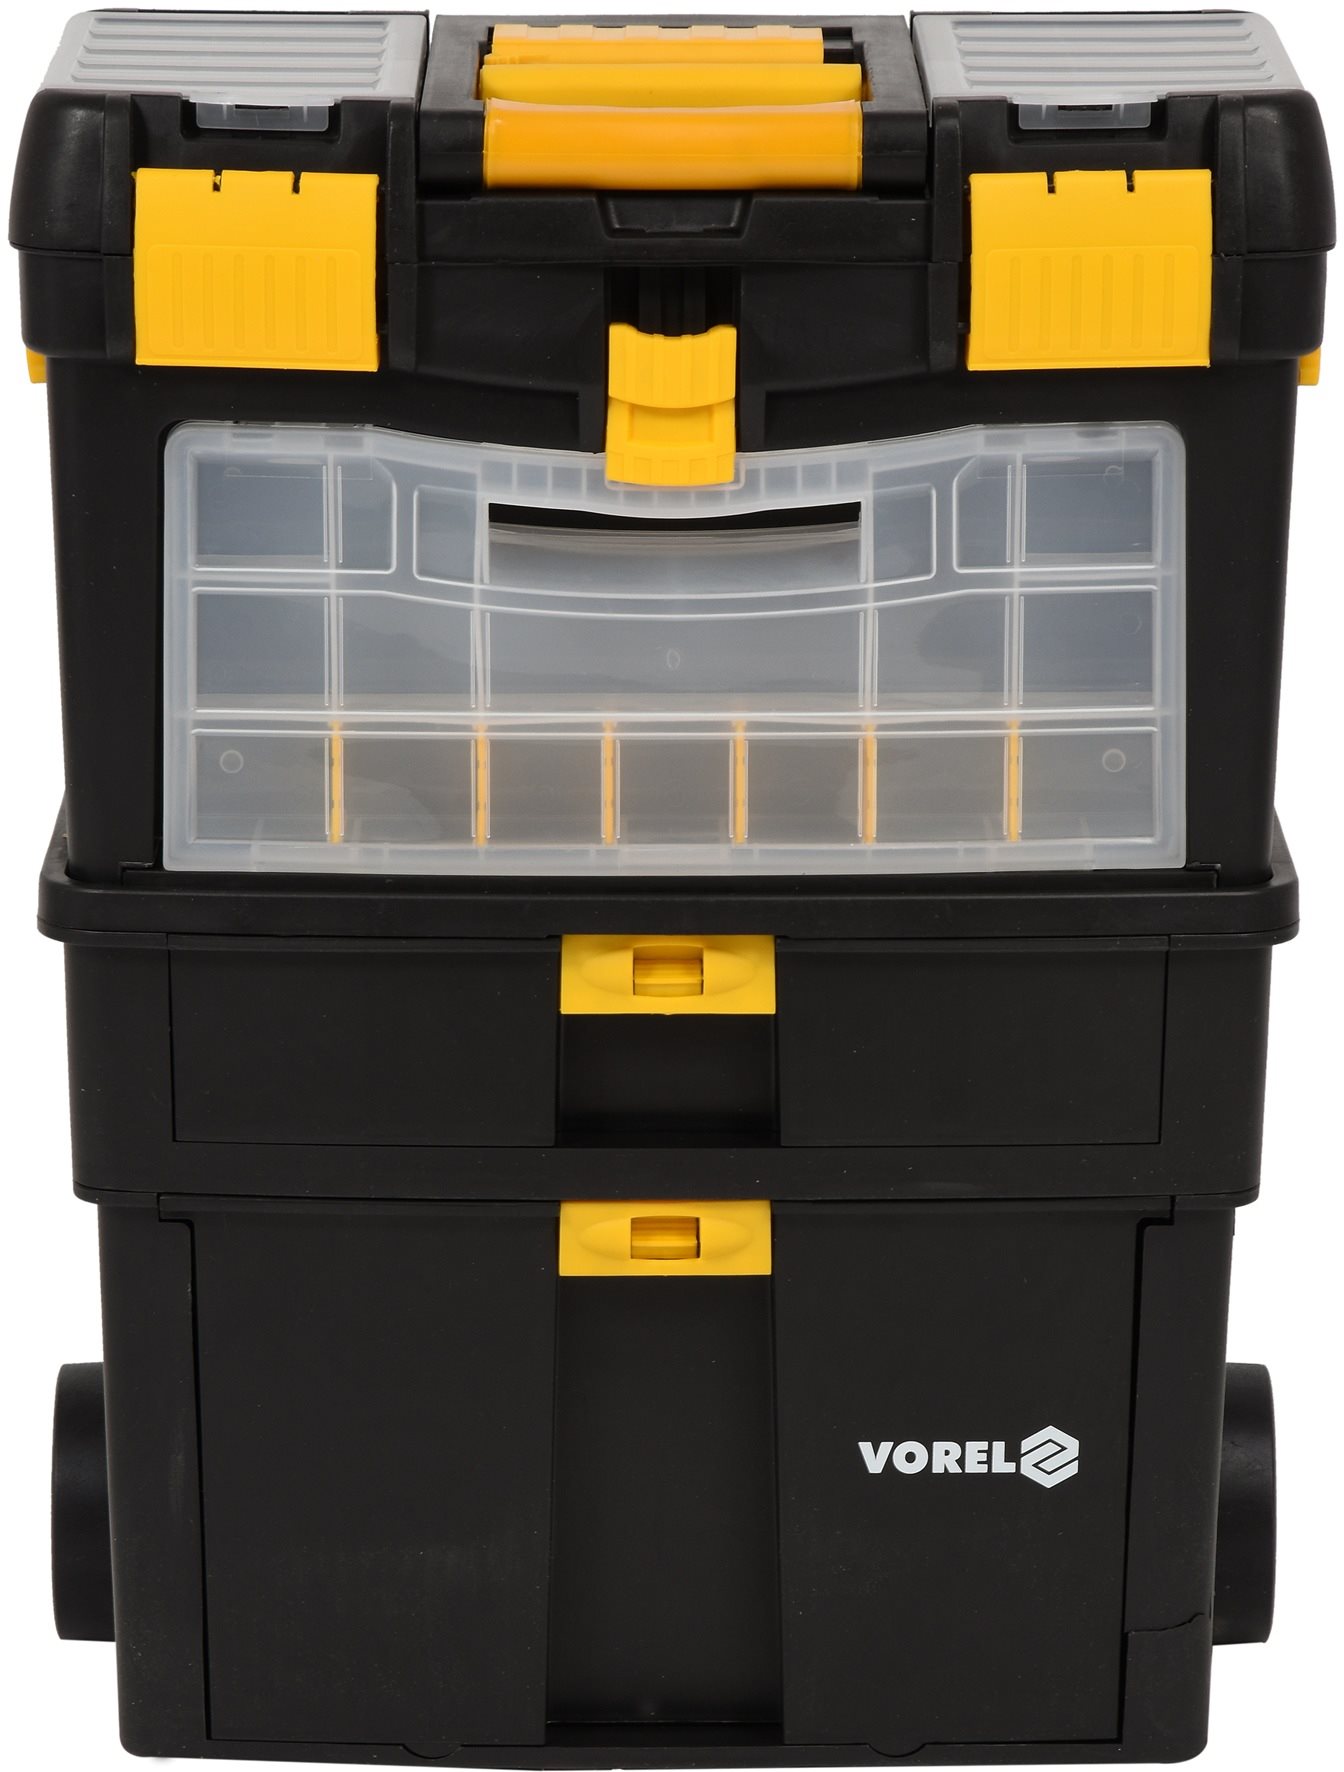 Rendszerező Vorel Mobile szerszámszekrény kivehető szervezővel